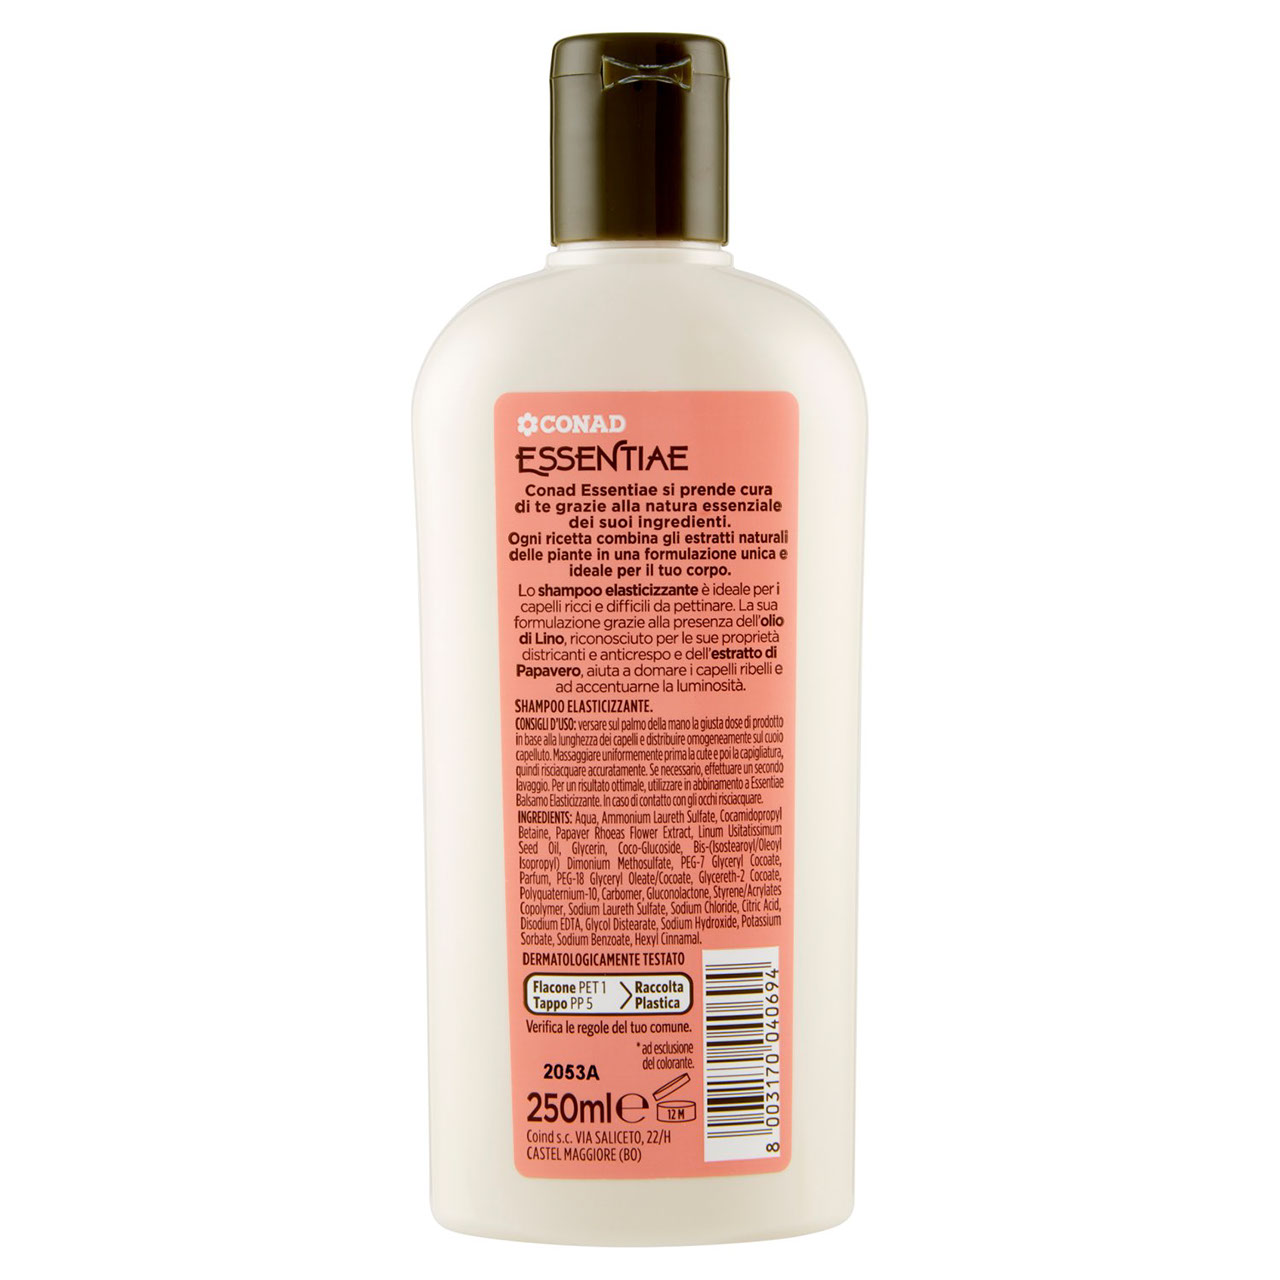 CONAD Essentiae Shampoo Elasticizzante 250 ml